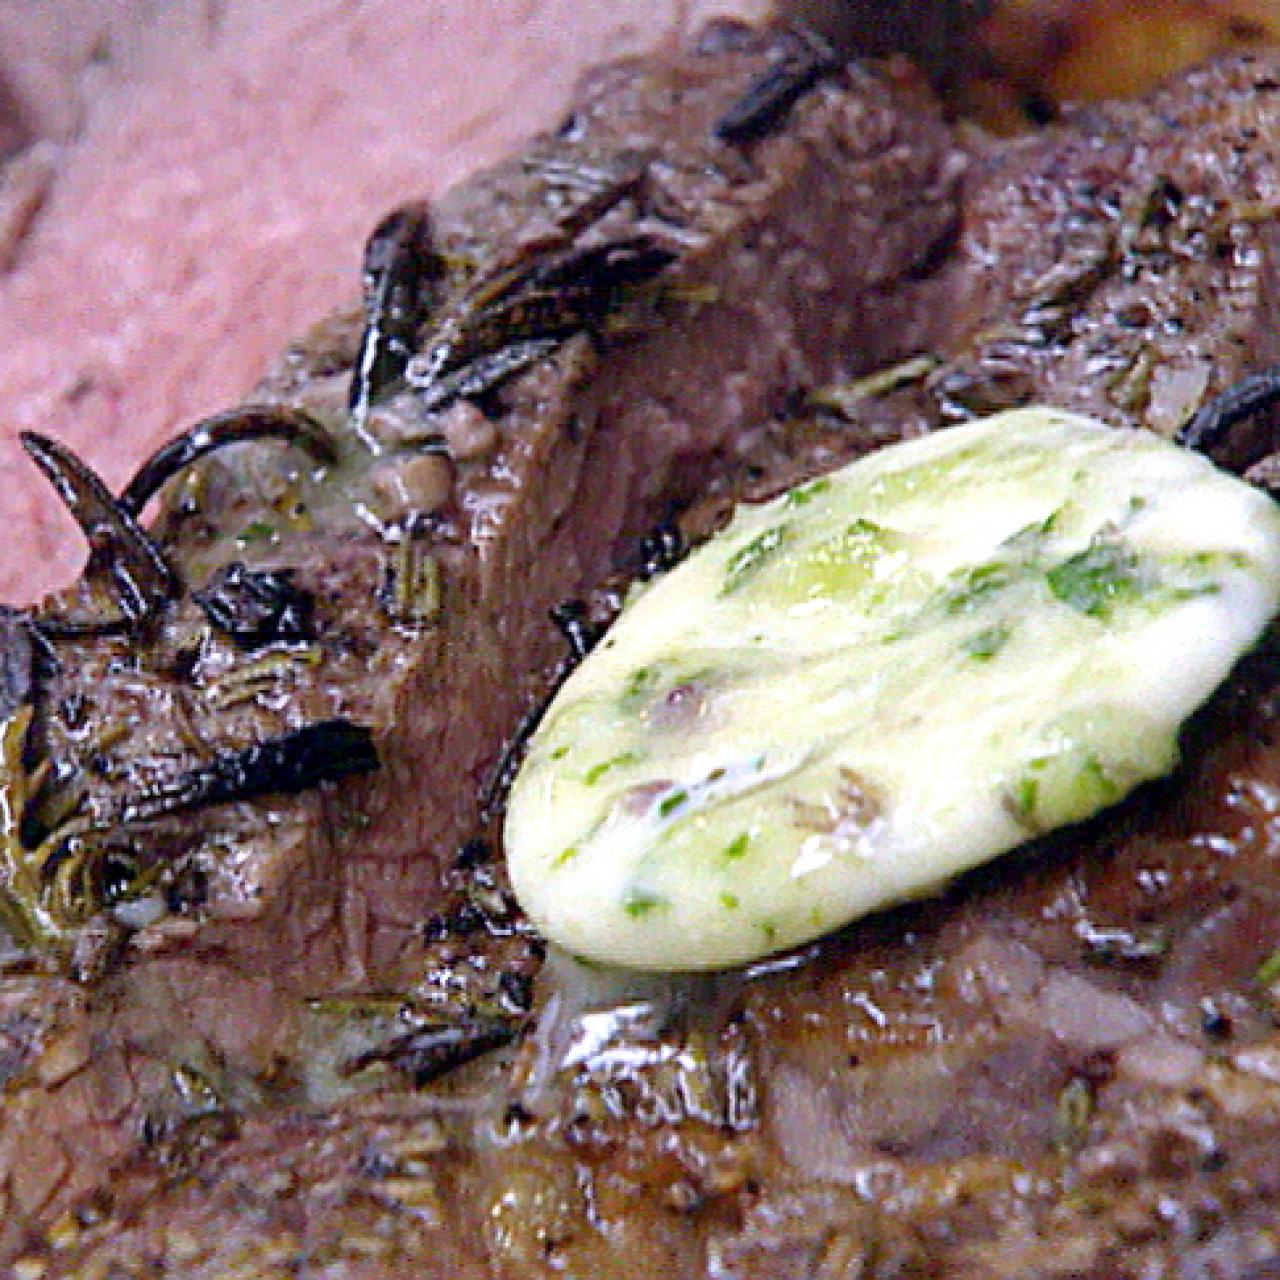 https://food.fnr.sndimg.com/content/dam/images/food/fullset/2004/4/13/0/jo1b21_herb_butter_steak.jpg.rend.hgtvcom.1280.1280.suffix/1386102795737.jpeg